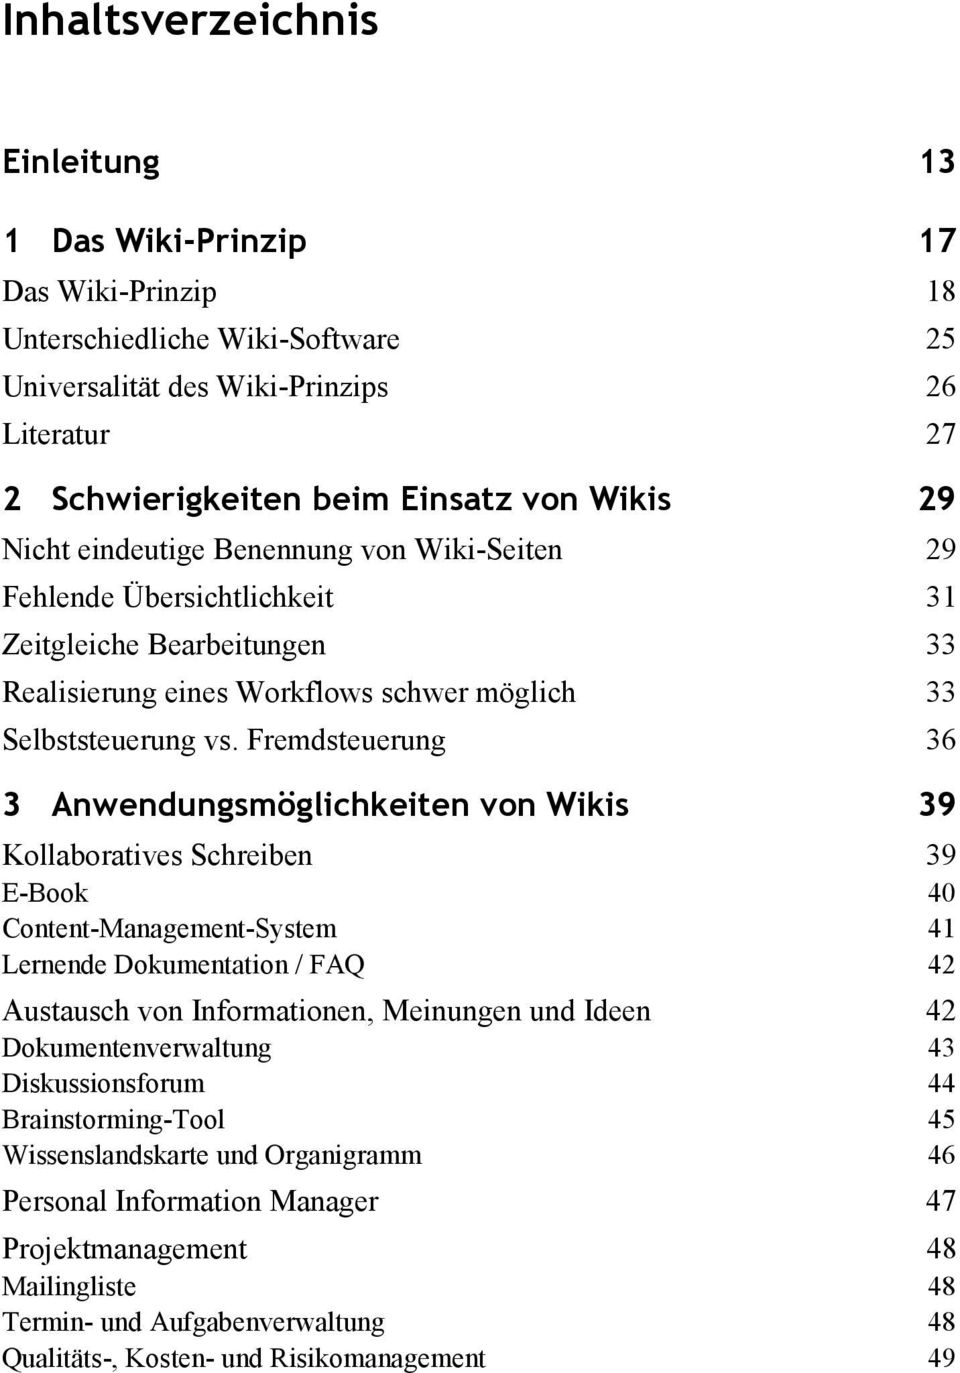 Fremdsteuerung 36 3 Anwendungsmöglichkeiten von Wikis 39 Kollaboratives Schreiben 39 E-Book 40 Content-Management-System 41 Lernende Dokumentation / FAQ 42 Austausch von Informationen, Meinungen und